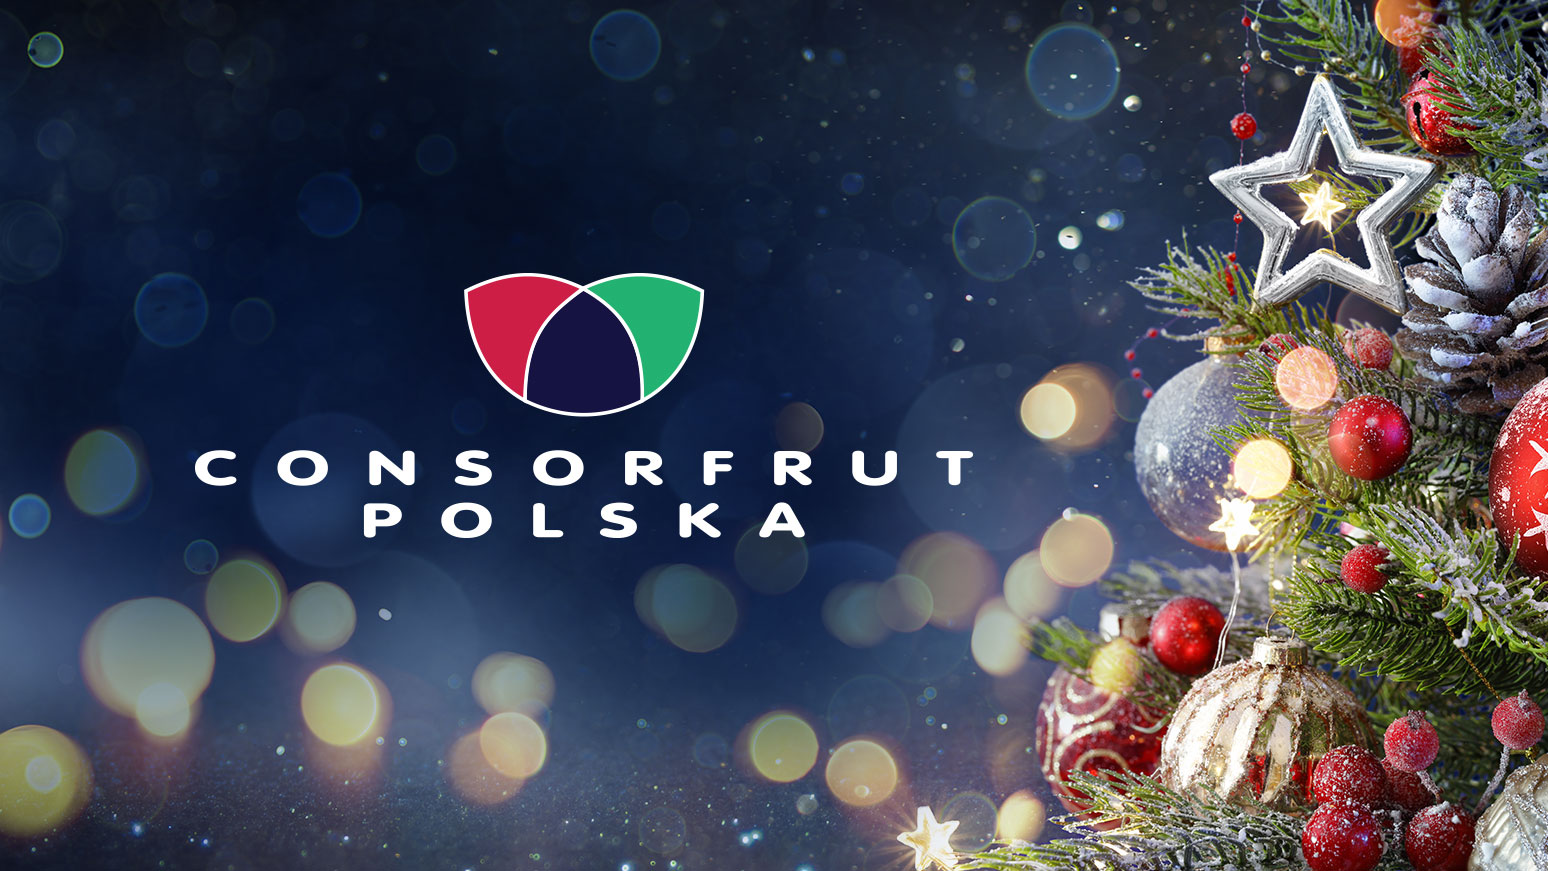 Świąteczne życzenia od Consorfrut Polska